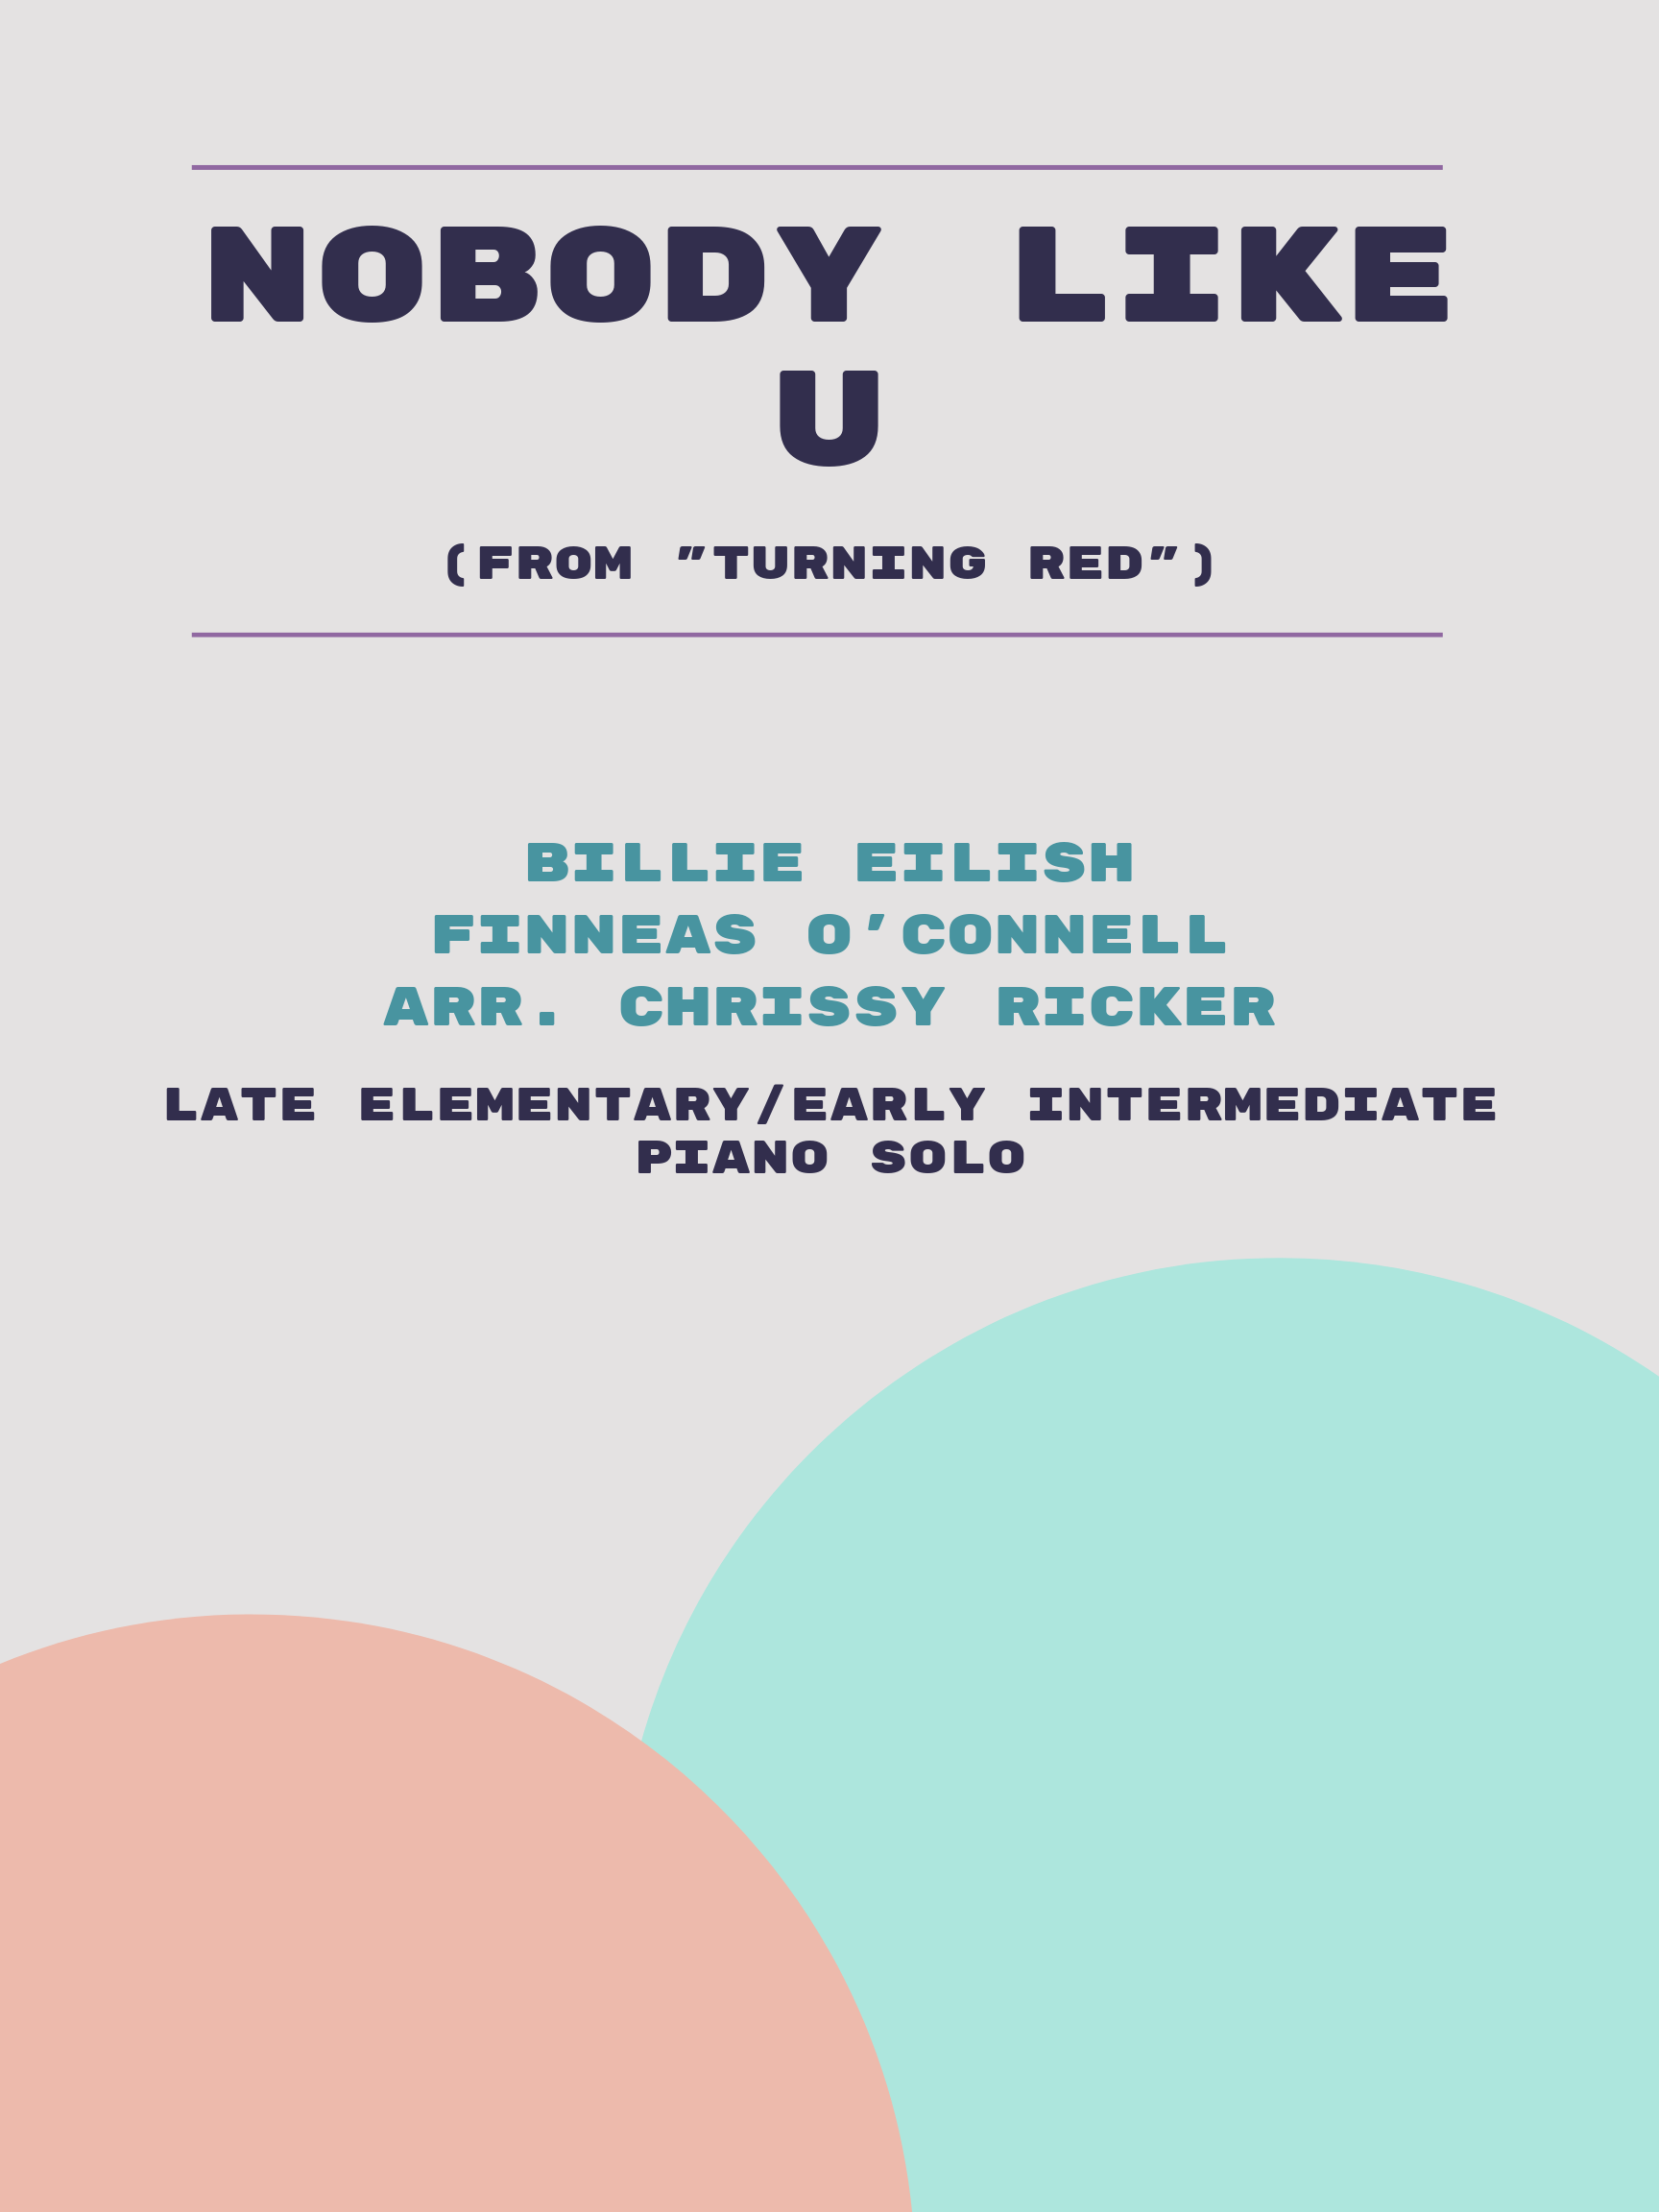 Nobody Like U by Billie Eilish, Finneas O'Connell